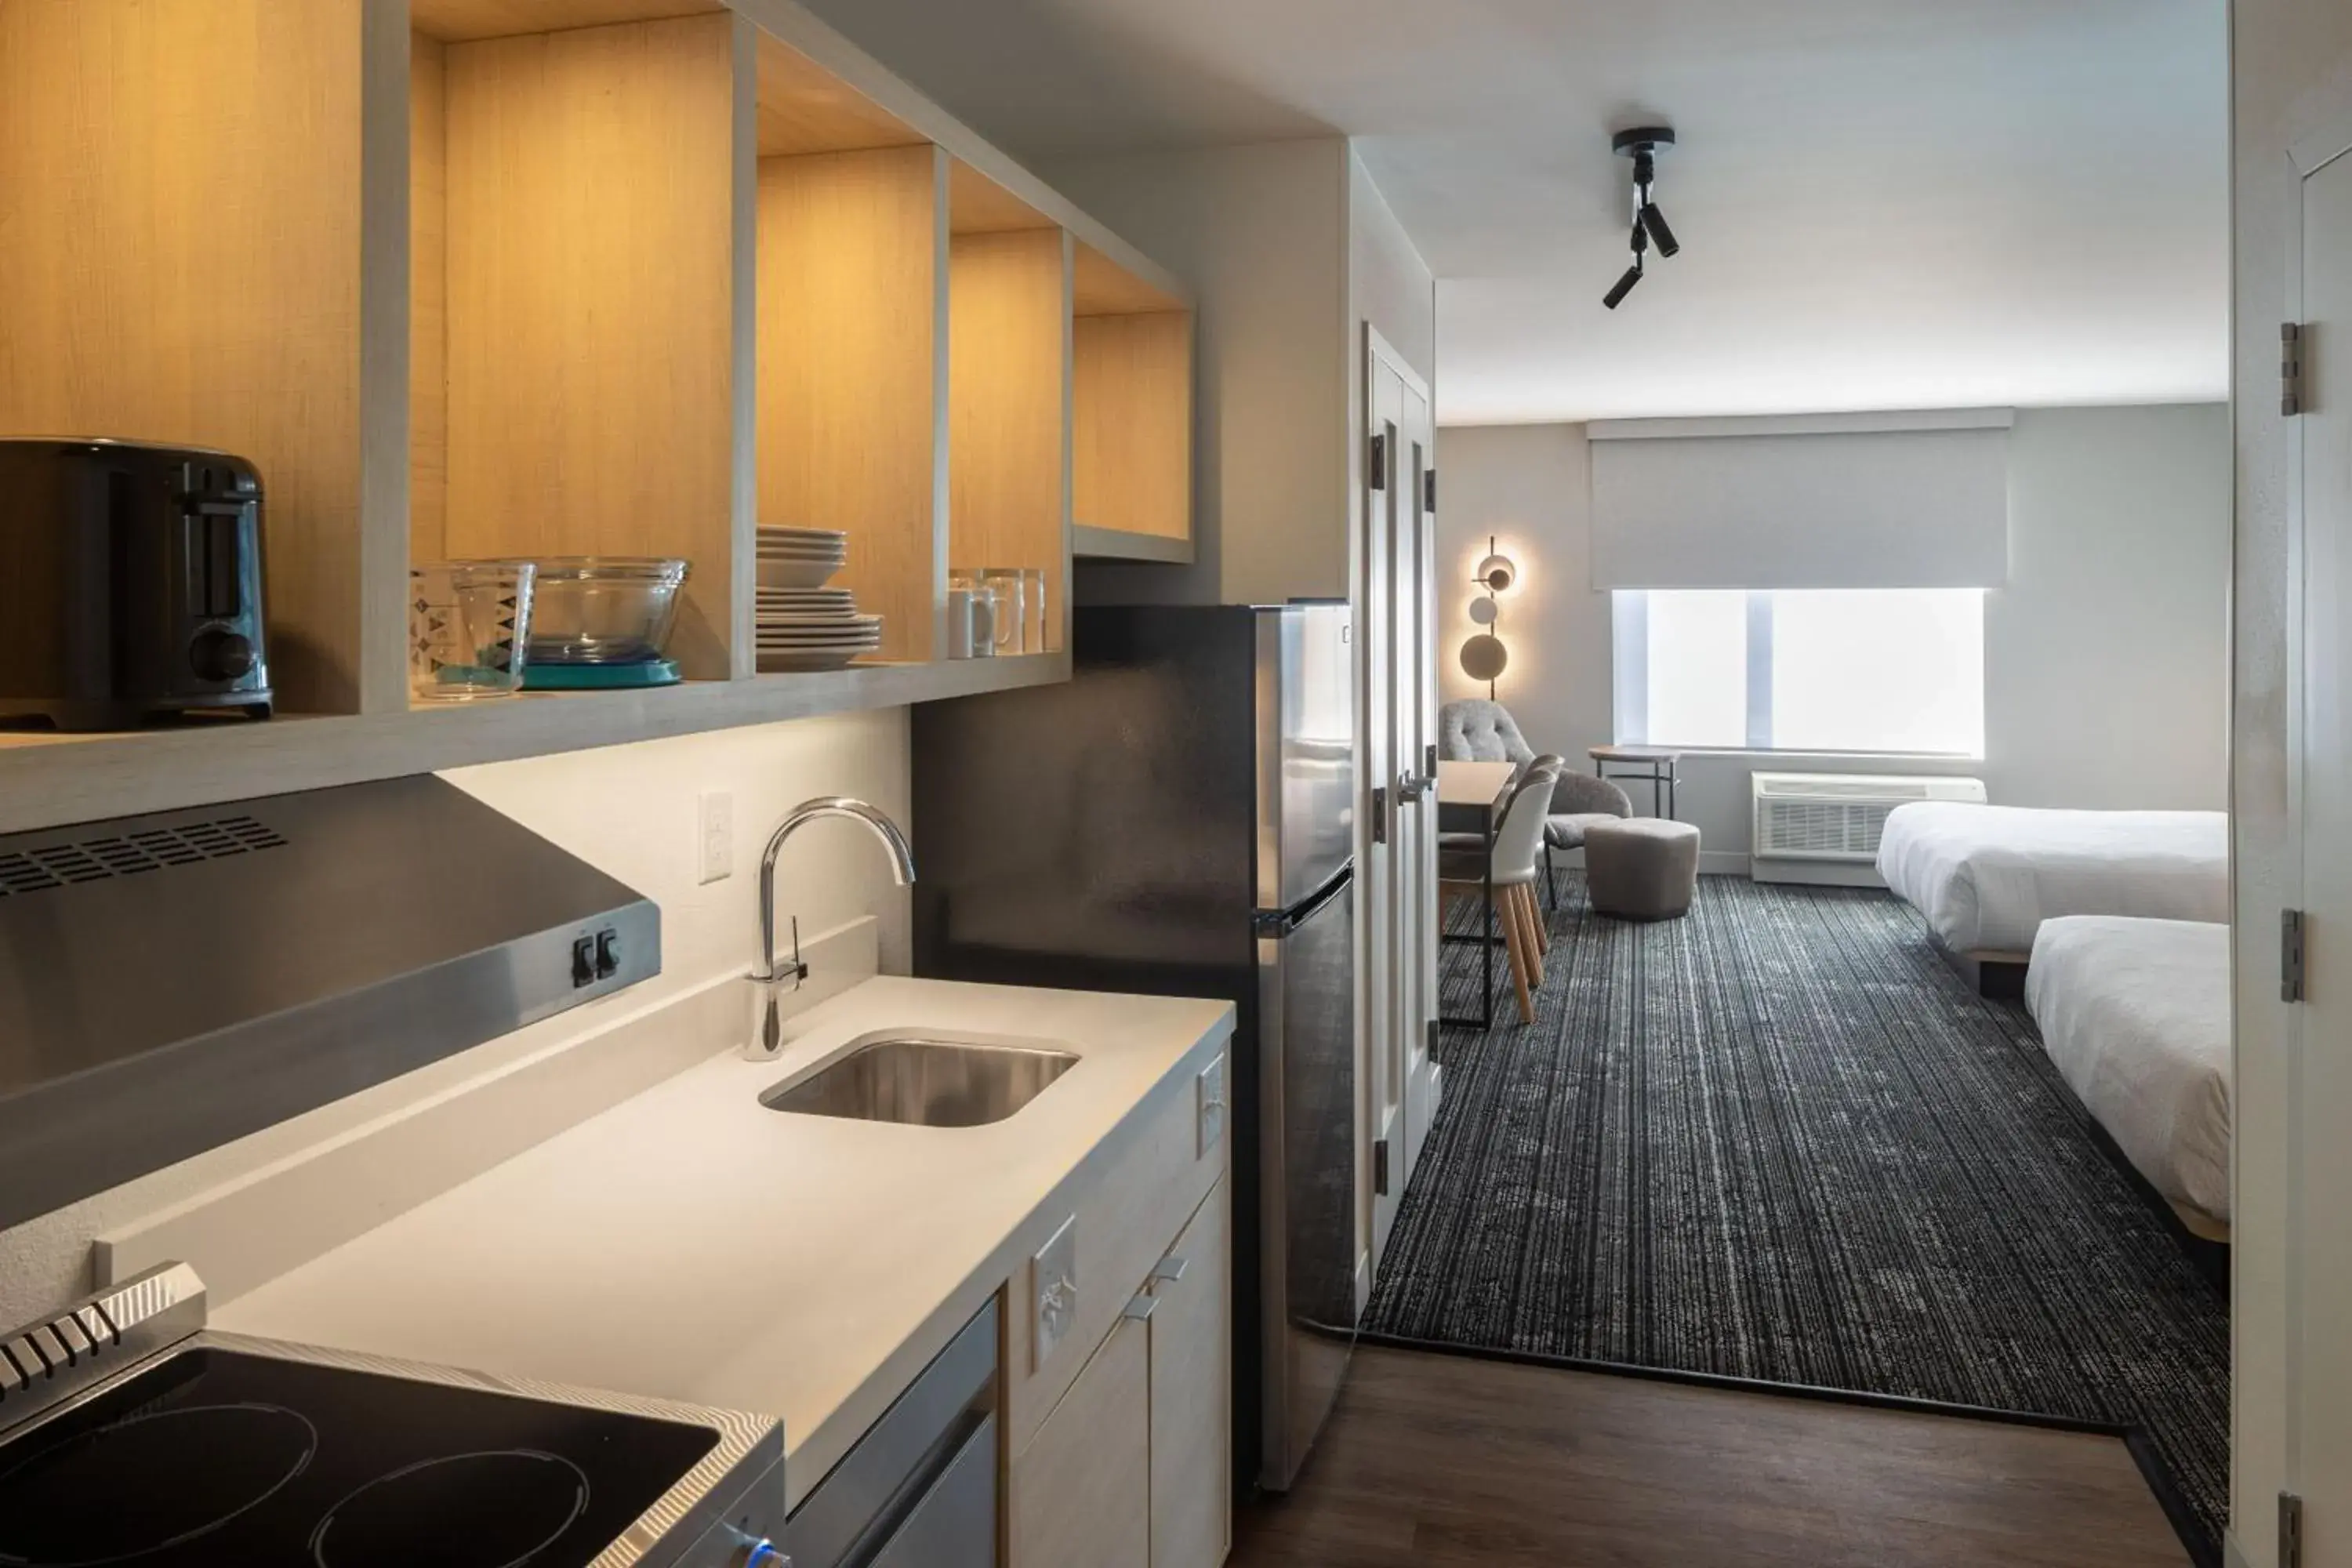 Kitchen or kitchenette, Kitchen/Kitchenette in TownePlace Suites by Marriott Georgetown